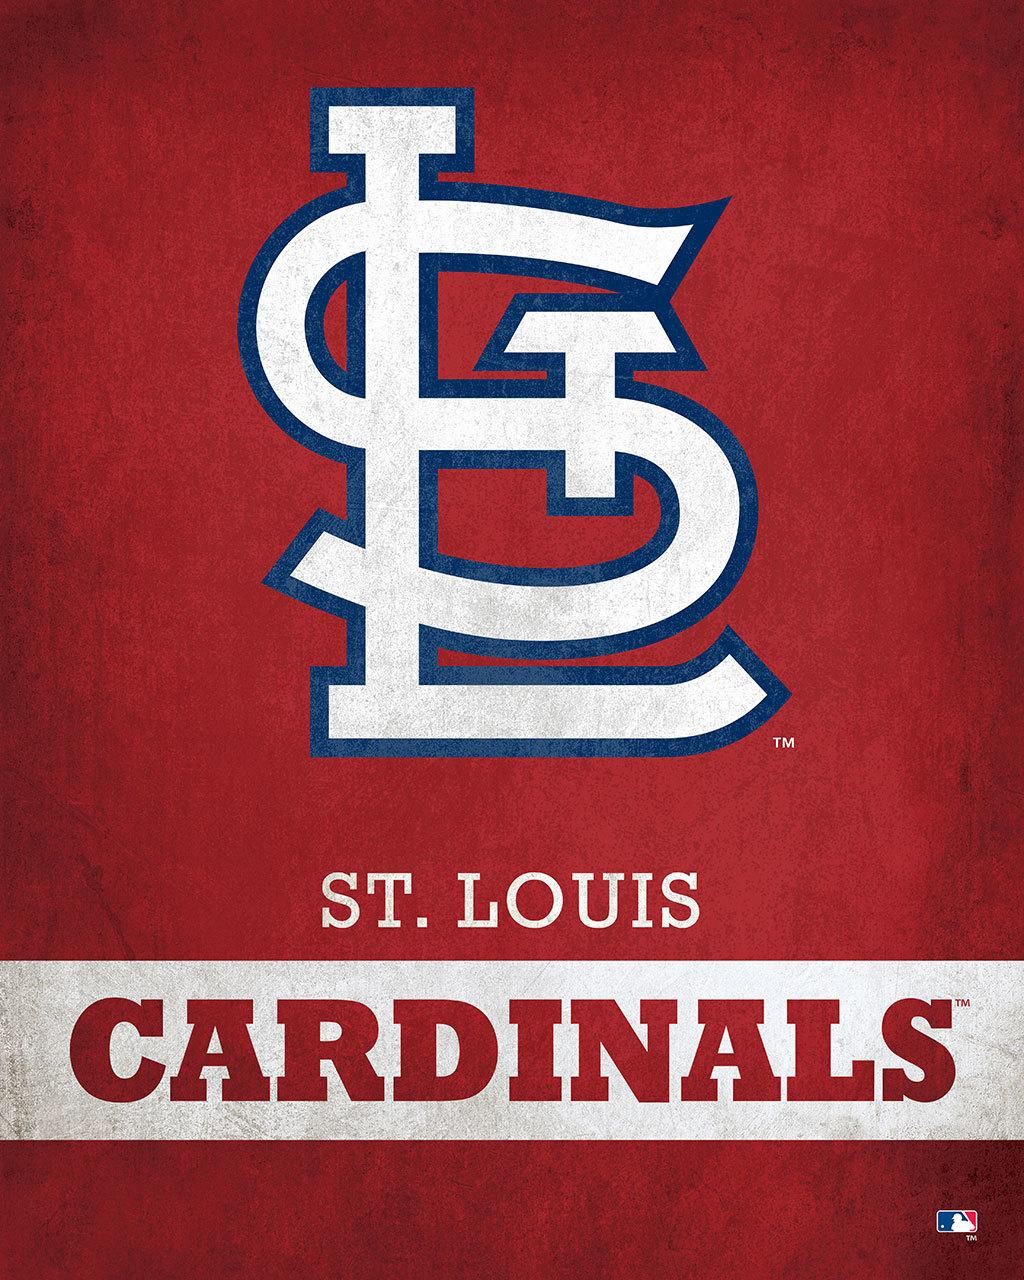 St. Louis Cardinals Logo - St. Louis Cardinals Logo